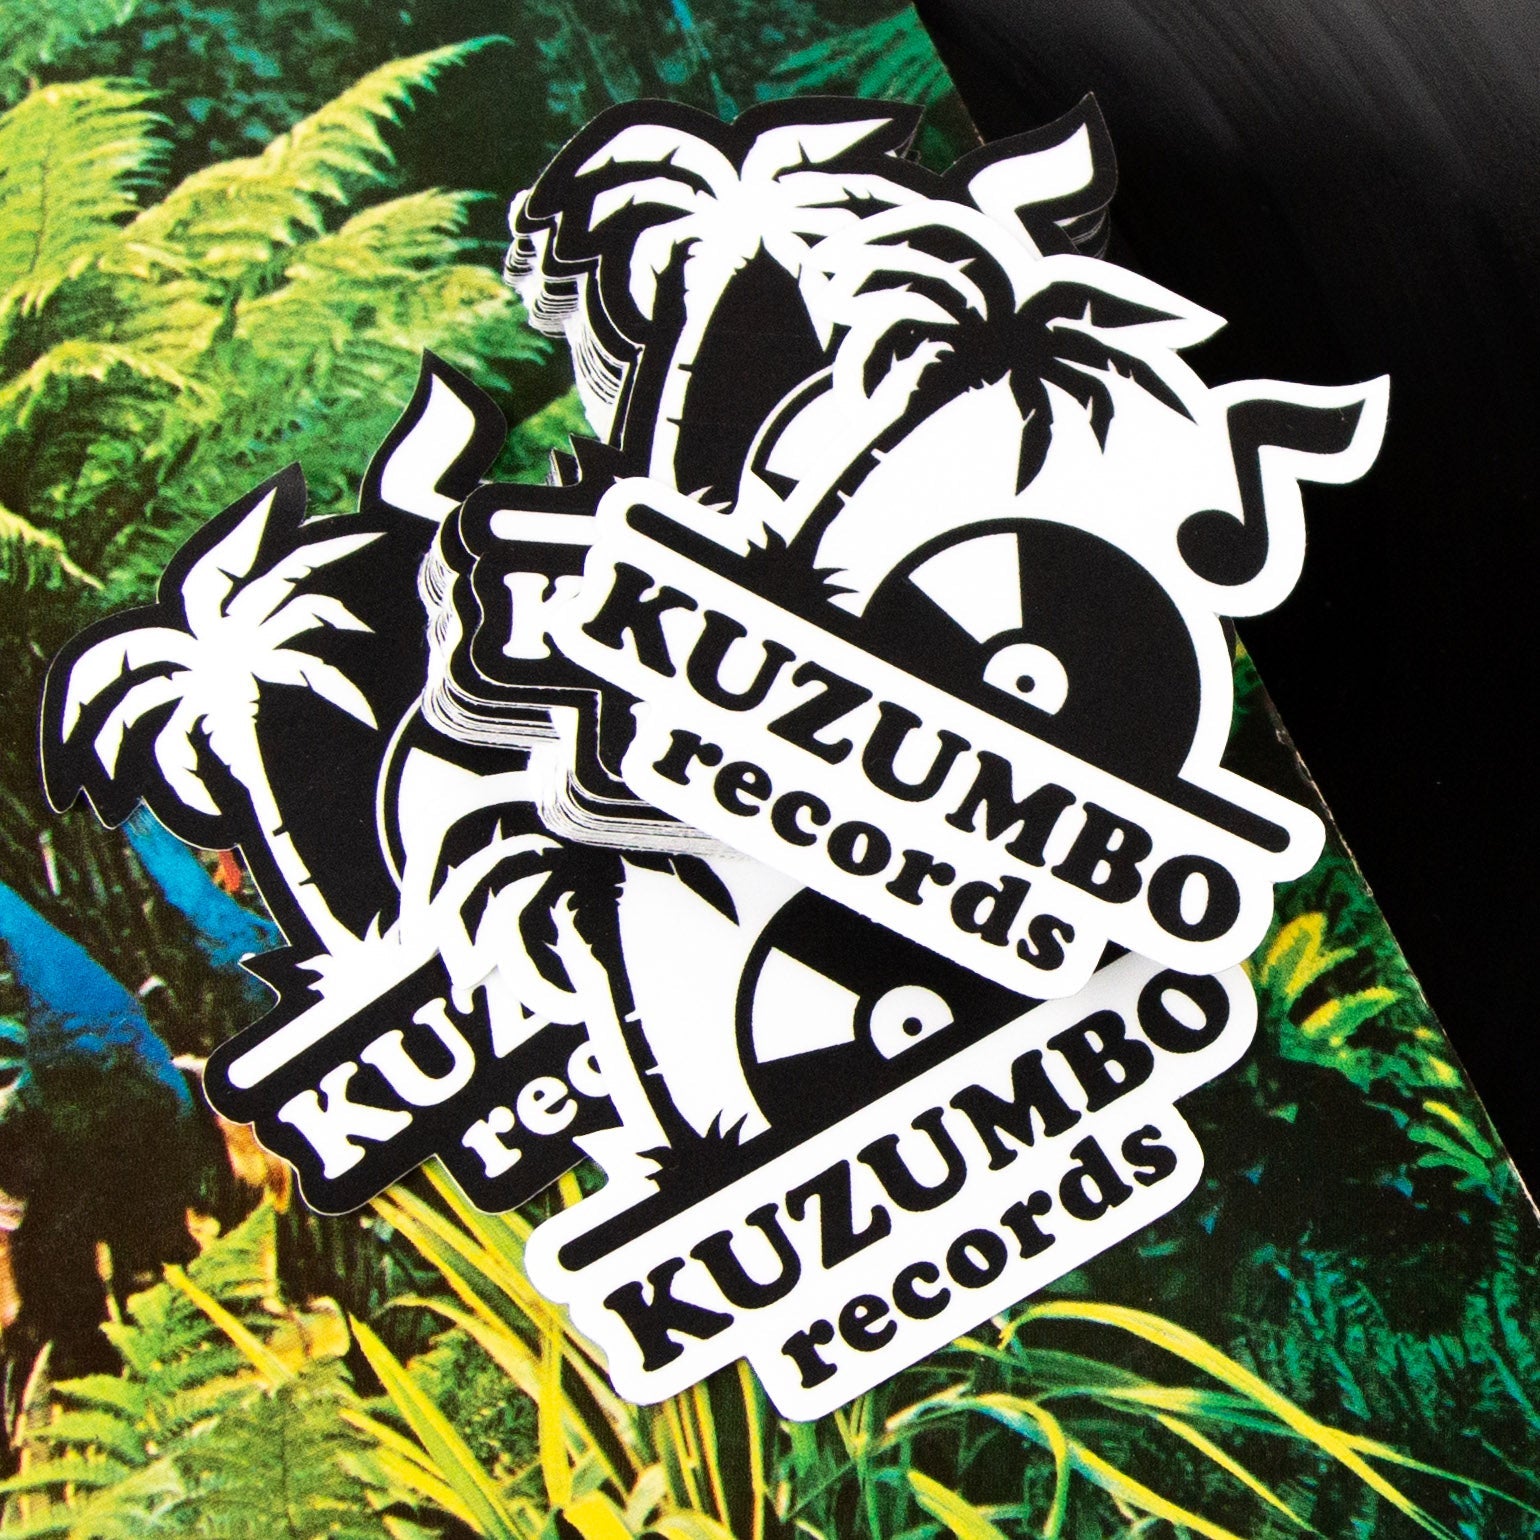 Kuzumbo records custom sticker